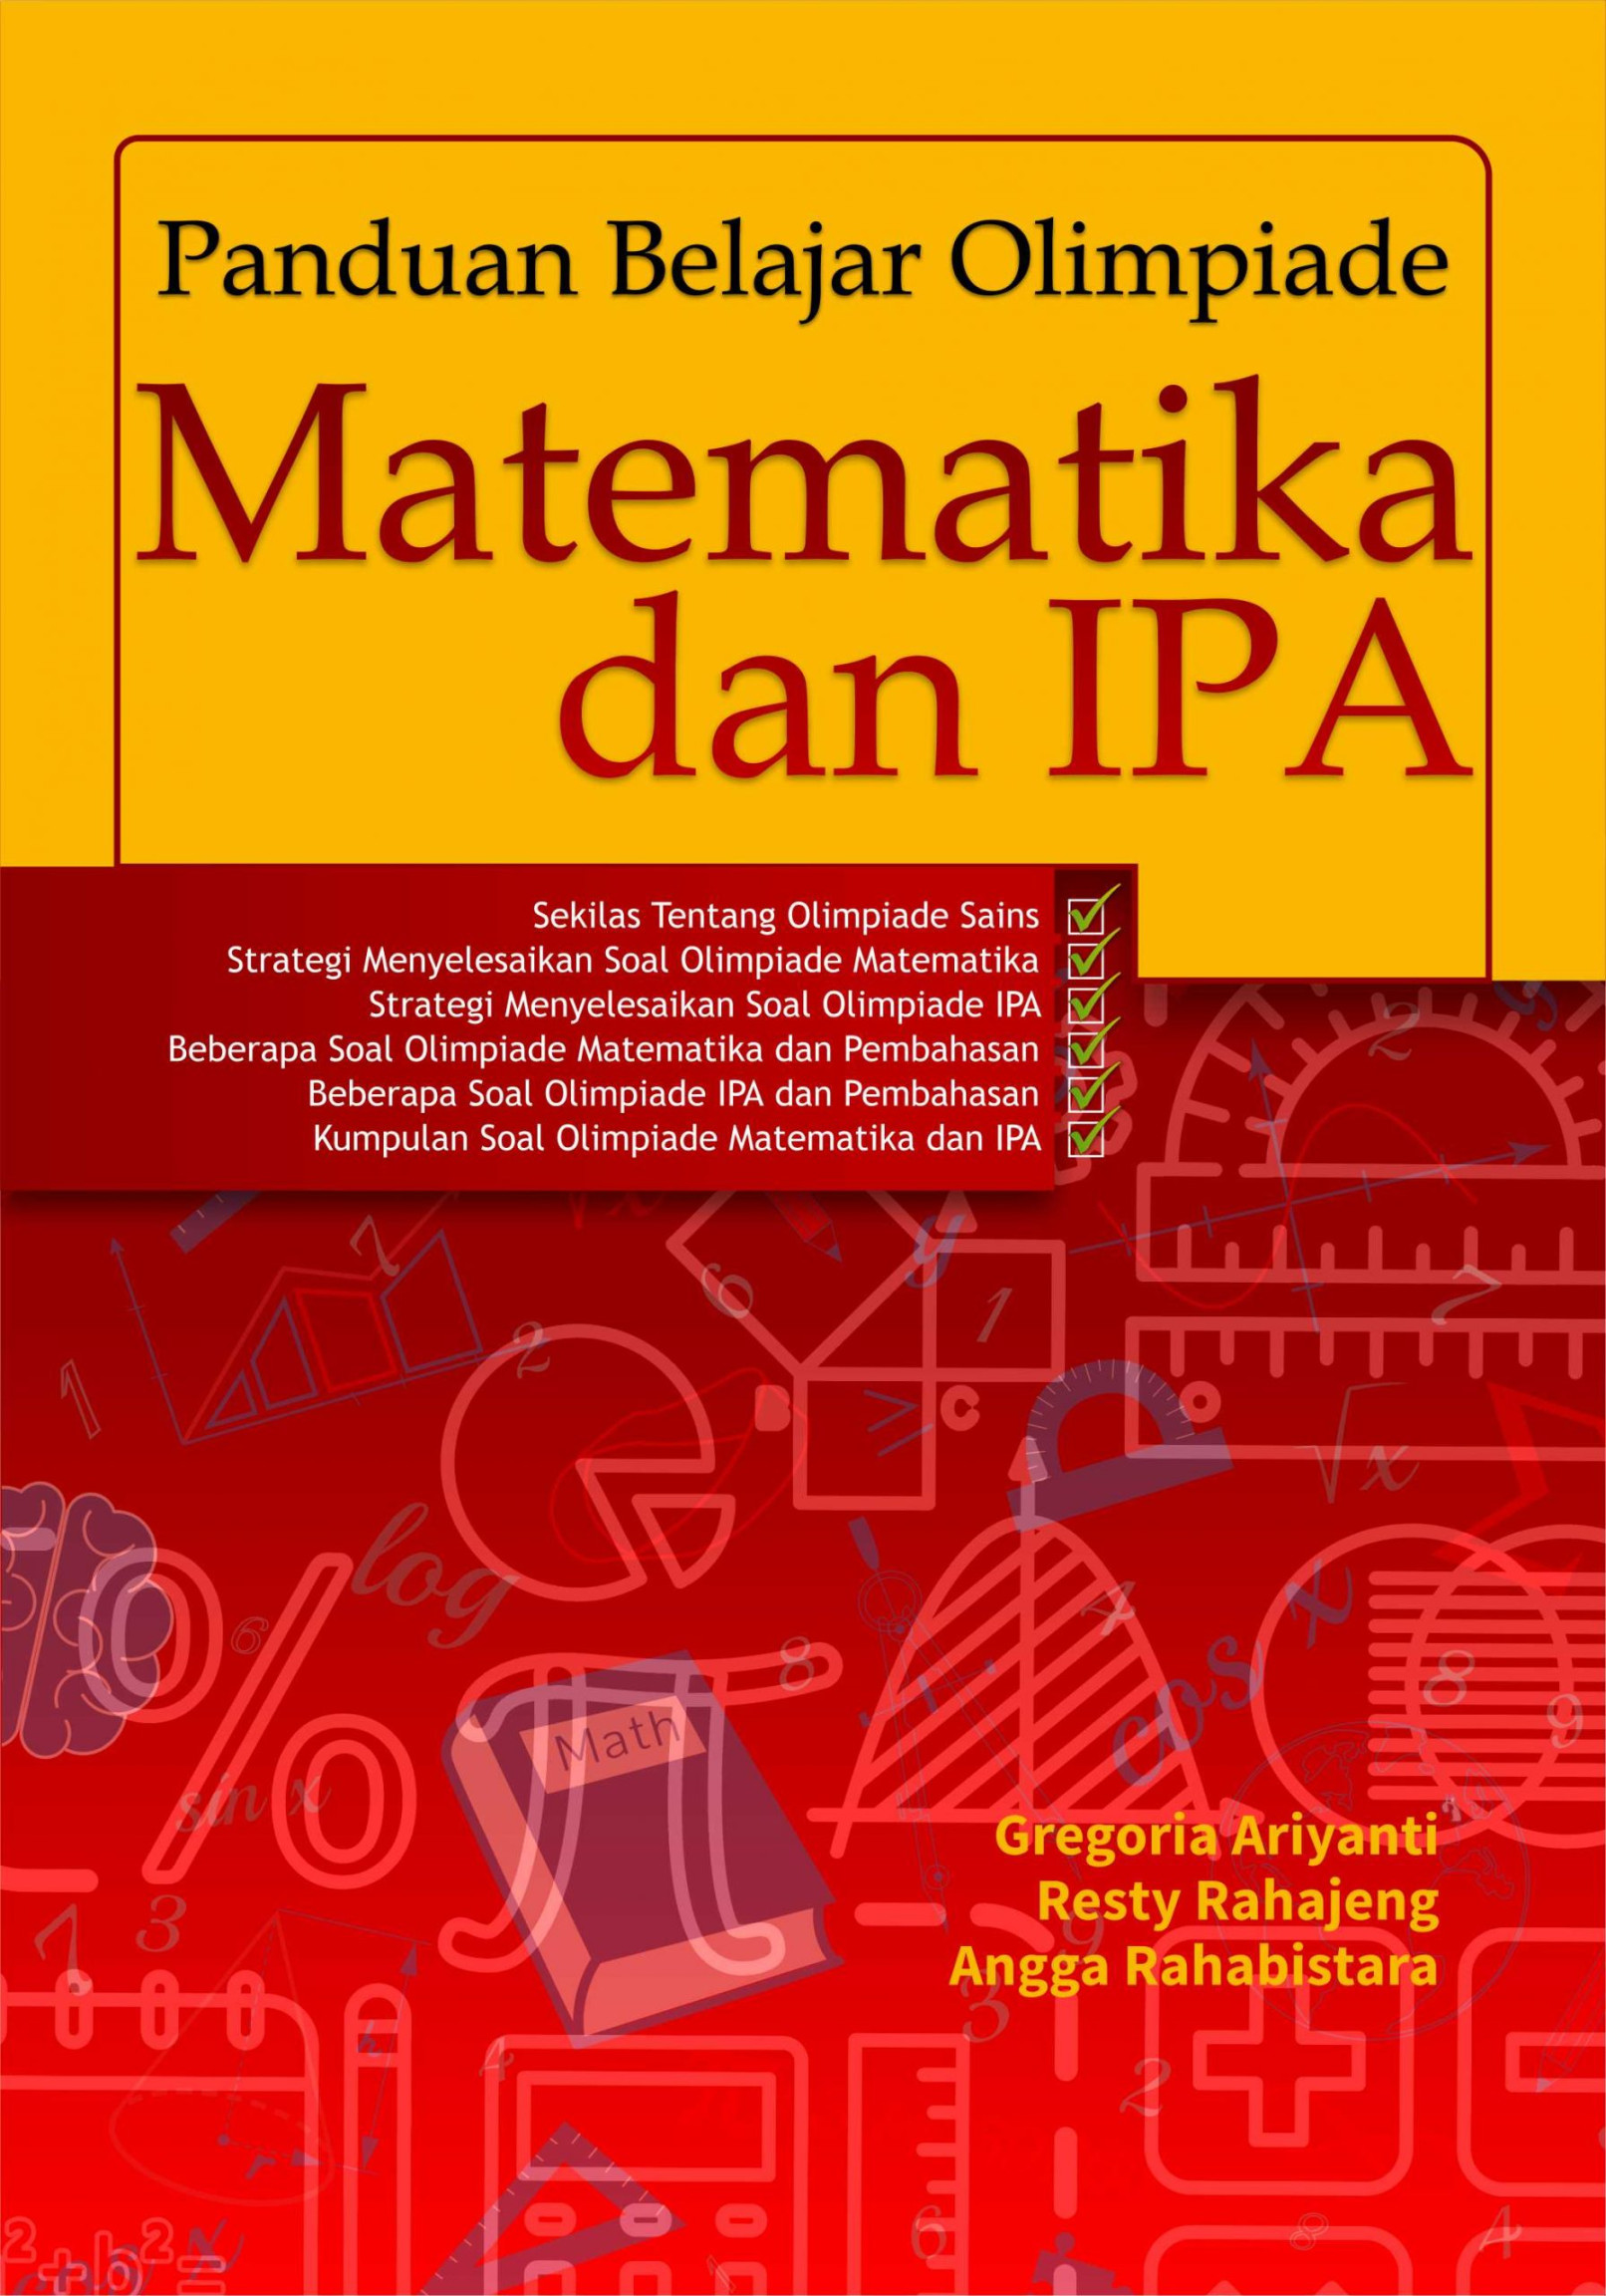 Buku Panduan Belajar Olimpiade Matematika dan IPA Deepublish